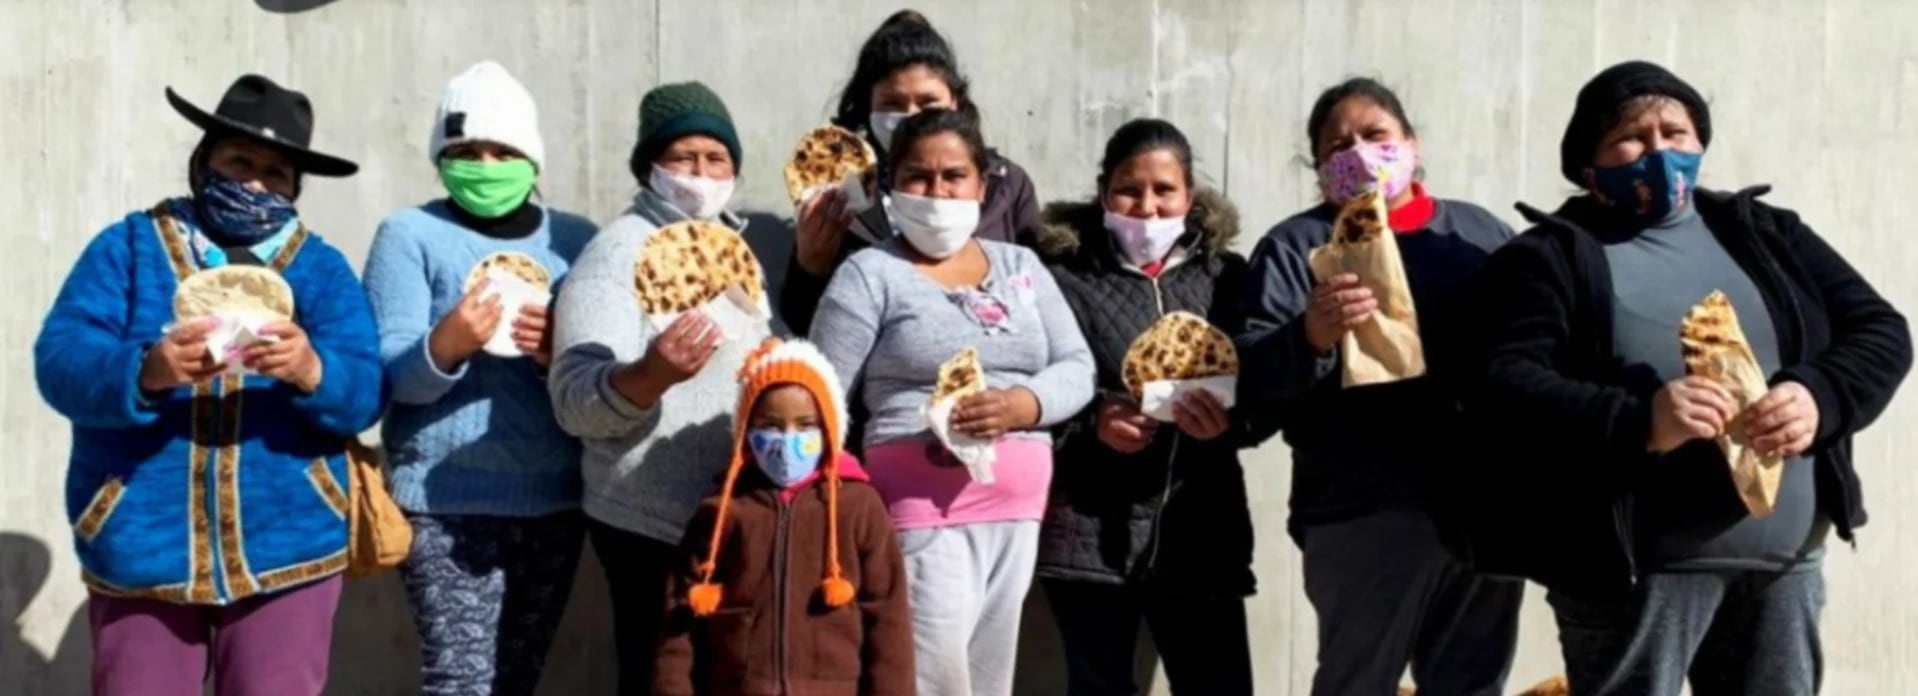 El grupo de emprendedoras está compuesto por mujeres que en algunos casos llevan más de diez años vendiendo tortillas y aprendieron el oficio viendo a sus madres o abuelas en sus hogares (Provincia de Jujuy)